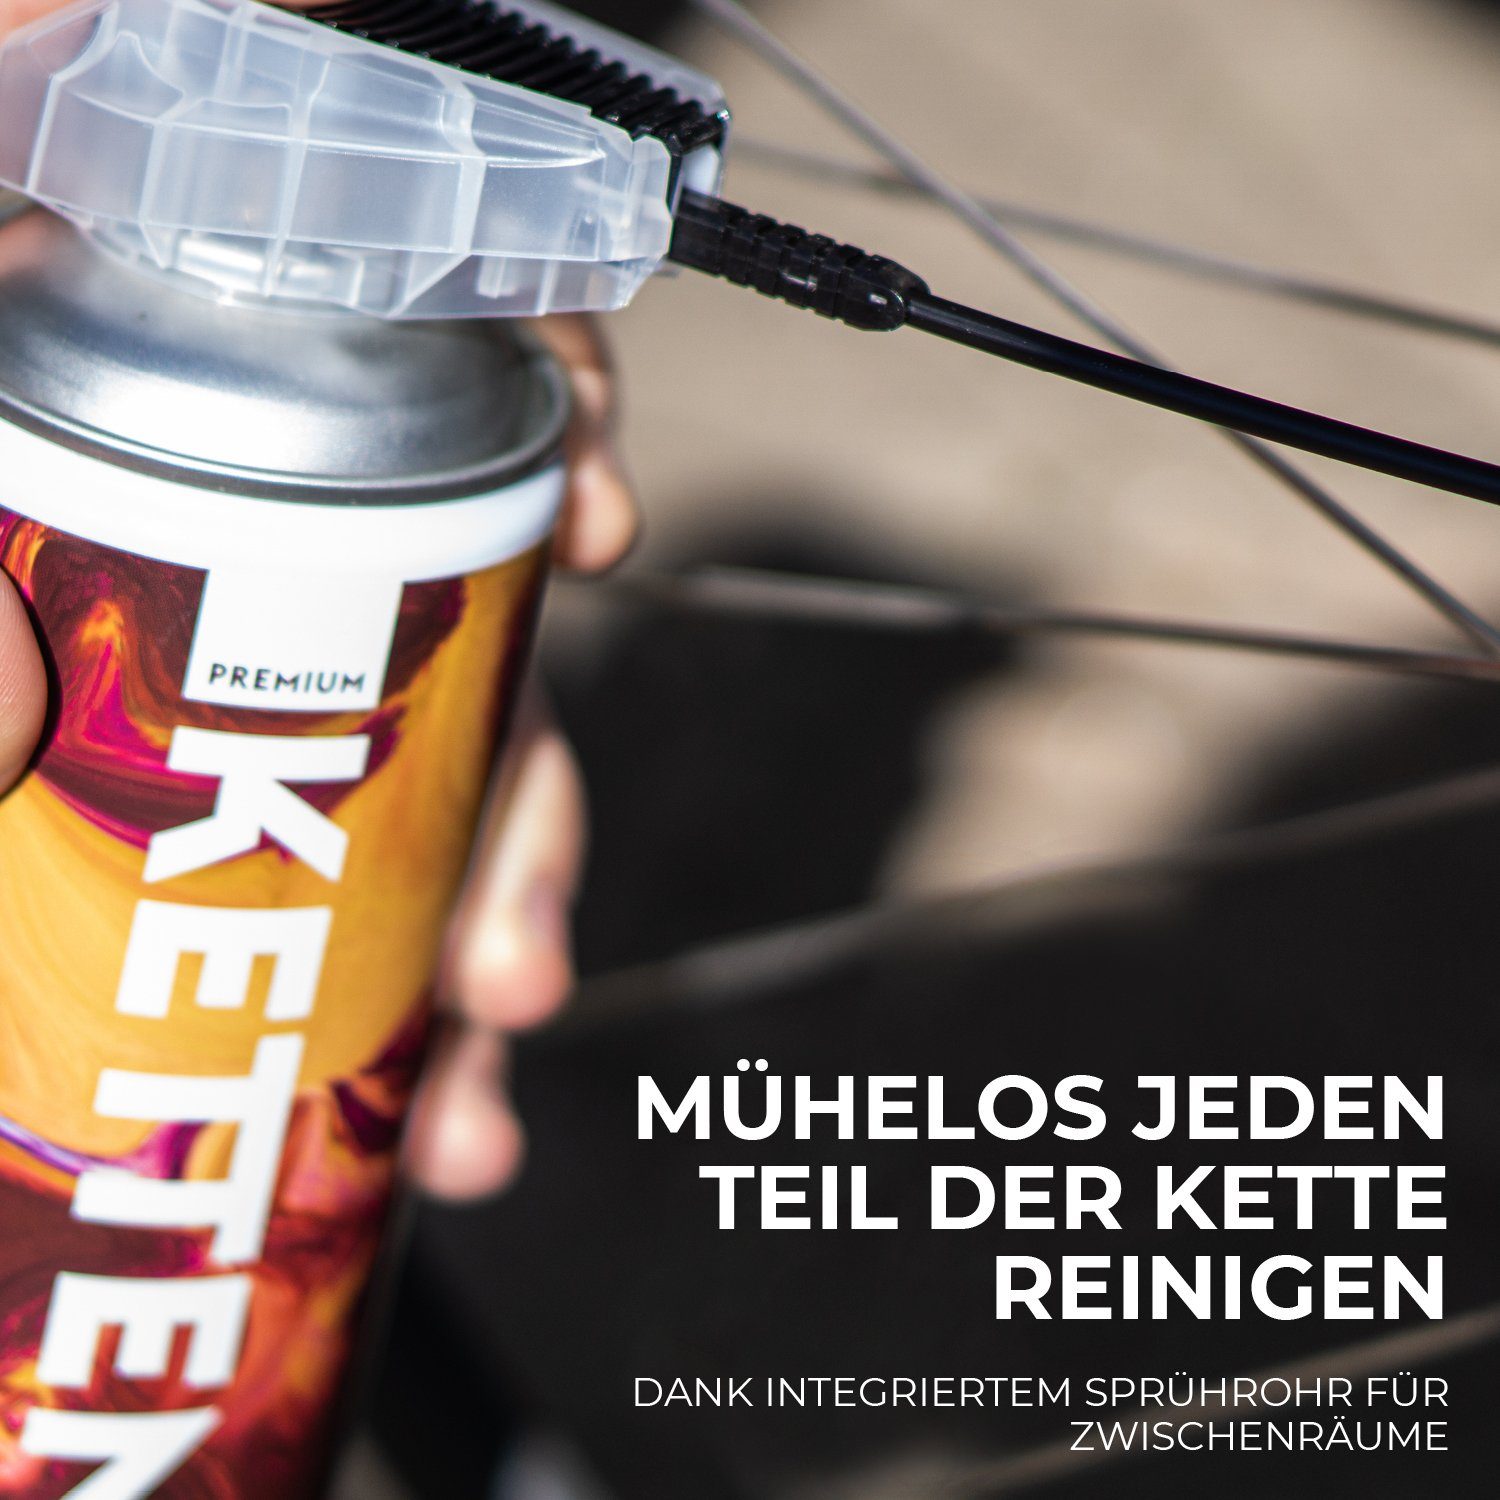 URBAN ZWEIRAD Fahrradketten PREMIUM ml, 400 Sprührohr Sprühdose Fahrrad Kettenöl wechselbaren mit